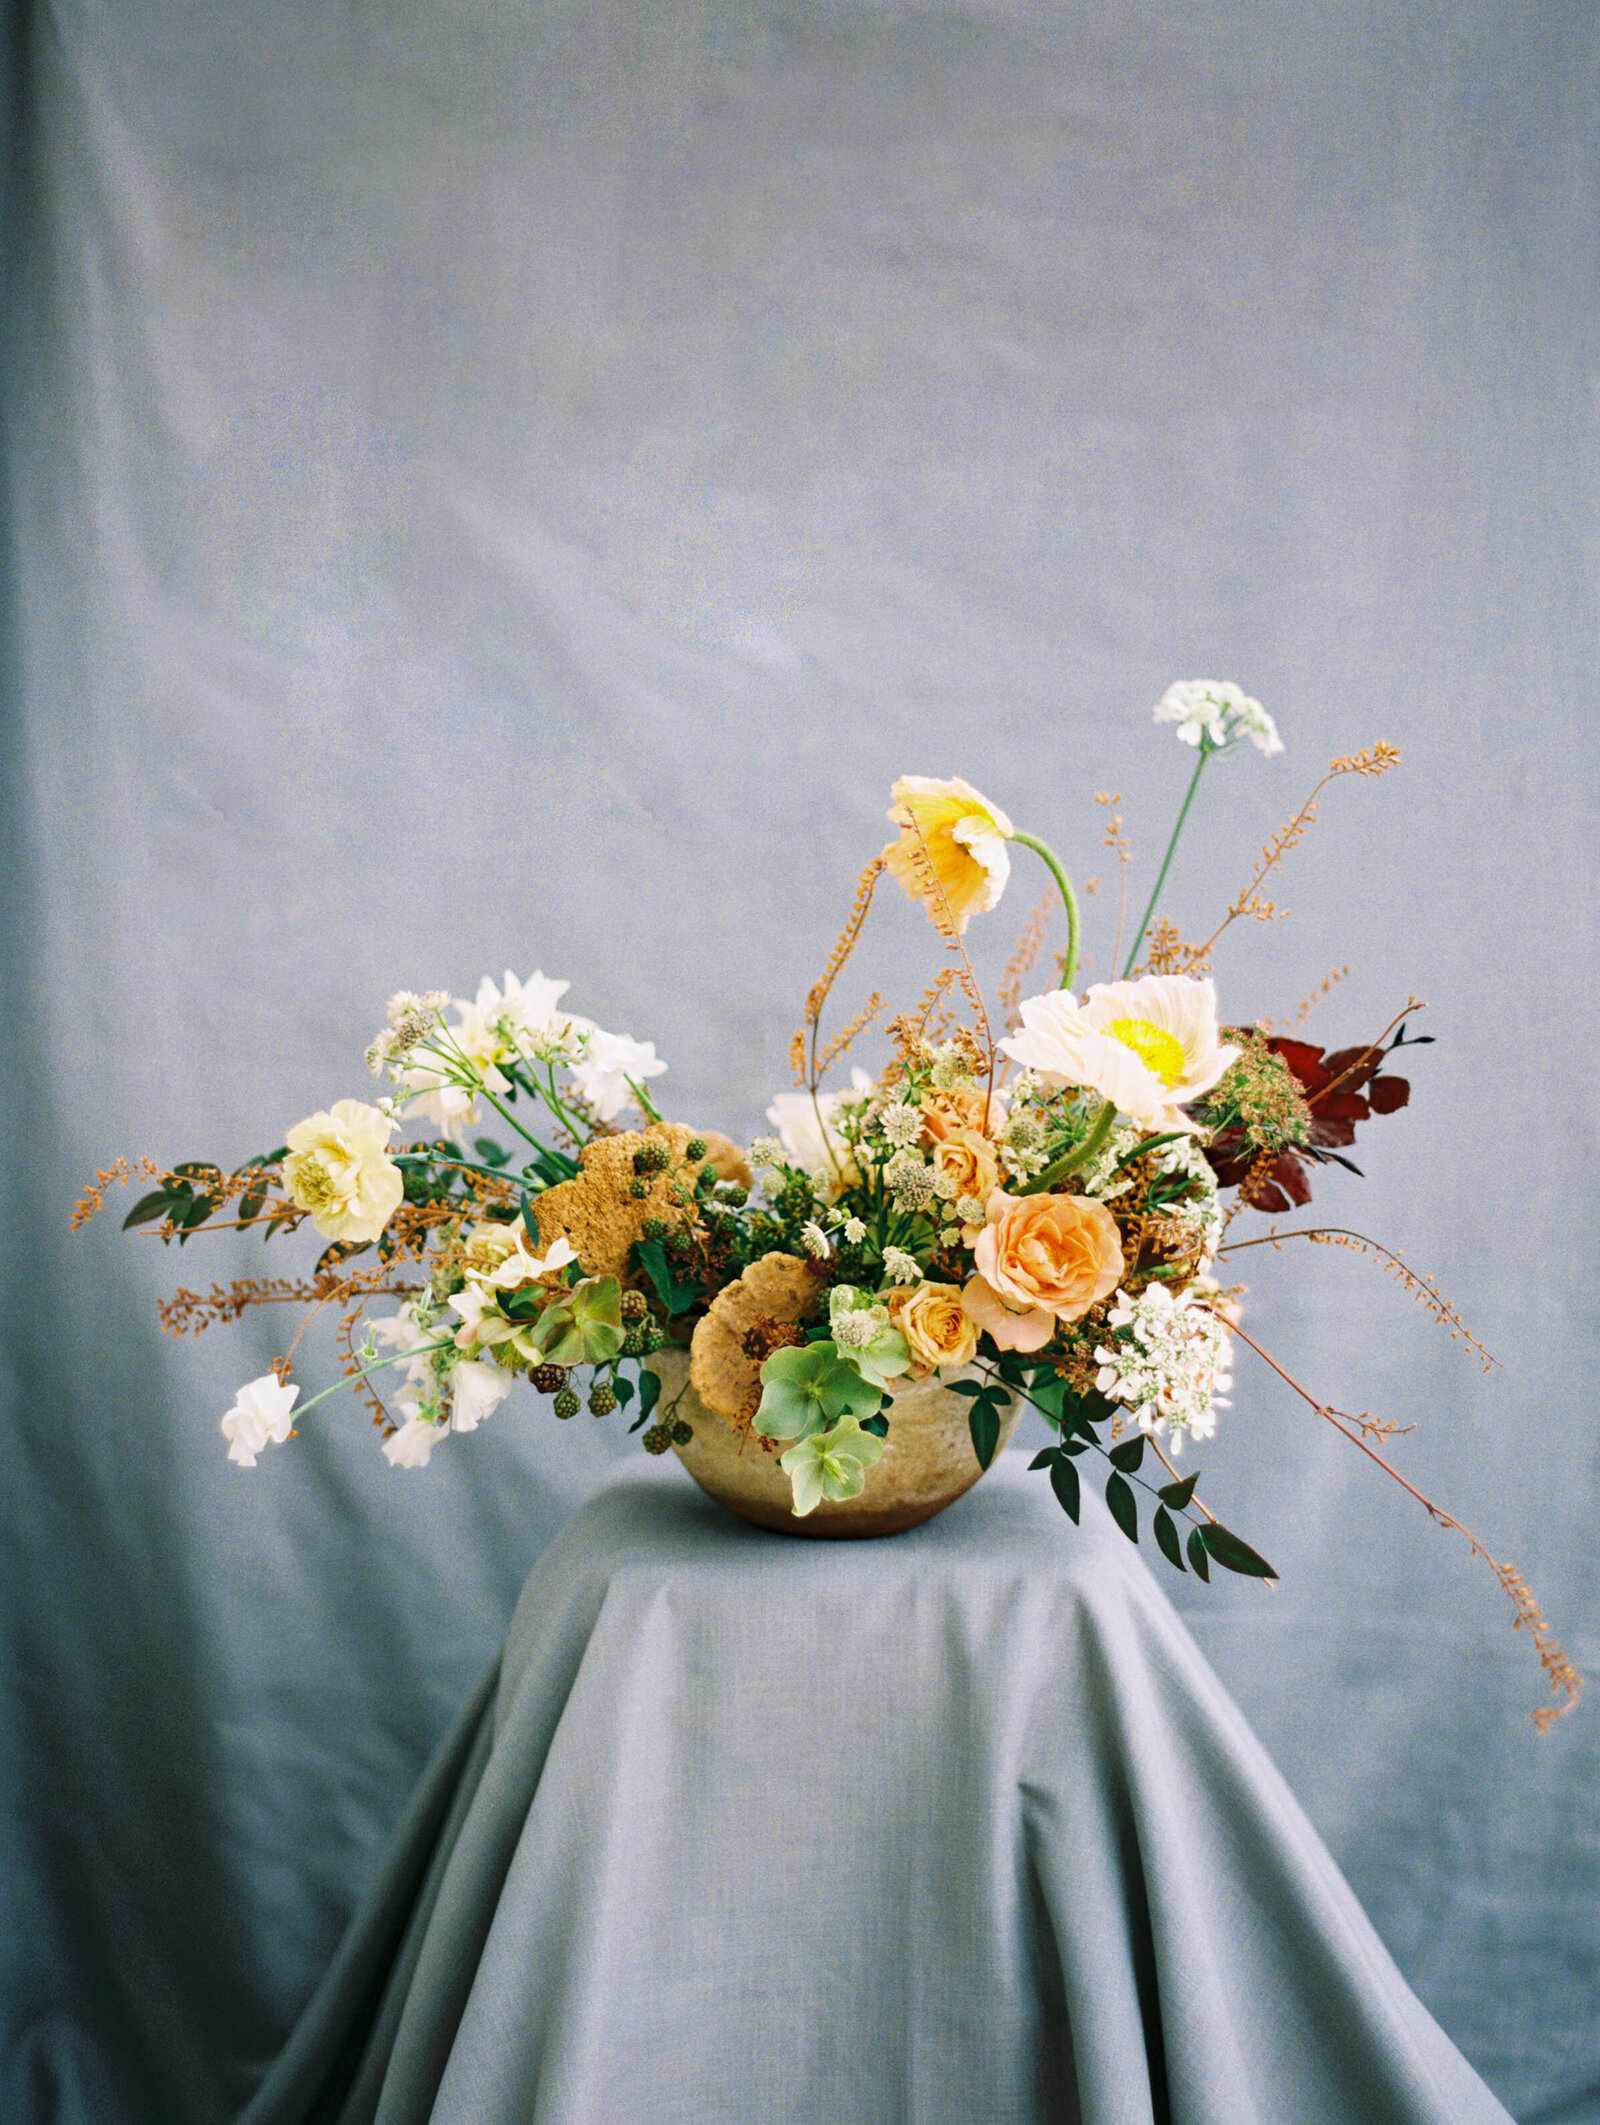 max-owens-design-at-home-floral-arrangements-18-best-florist